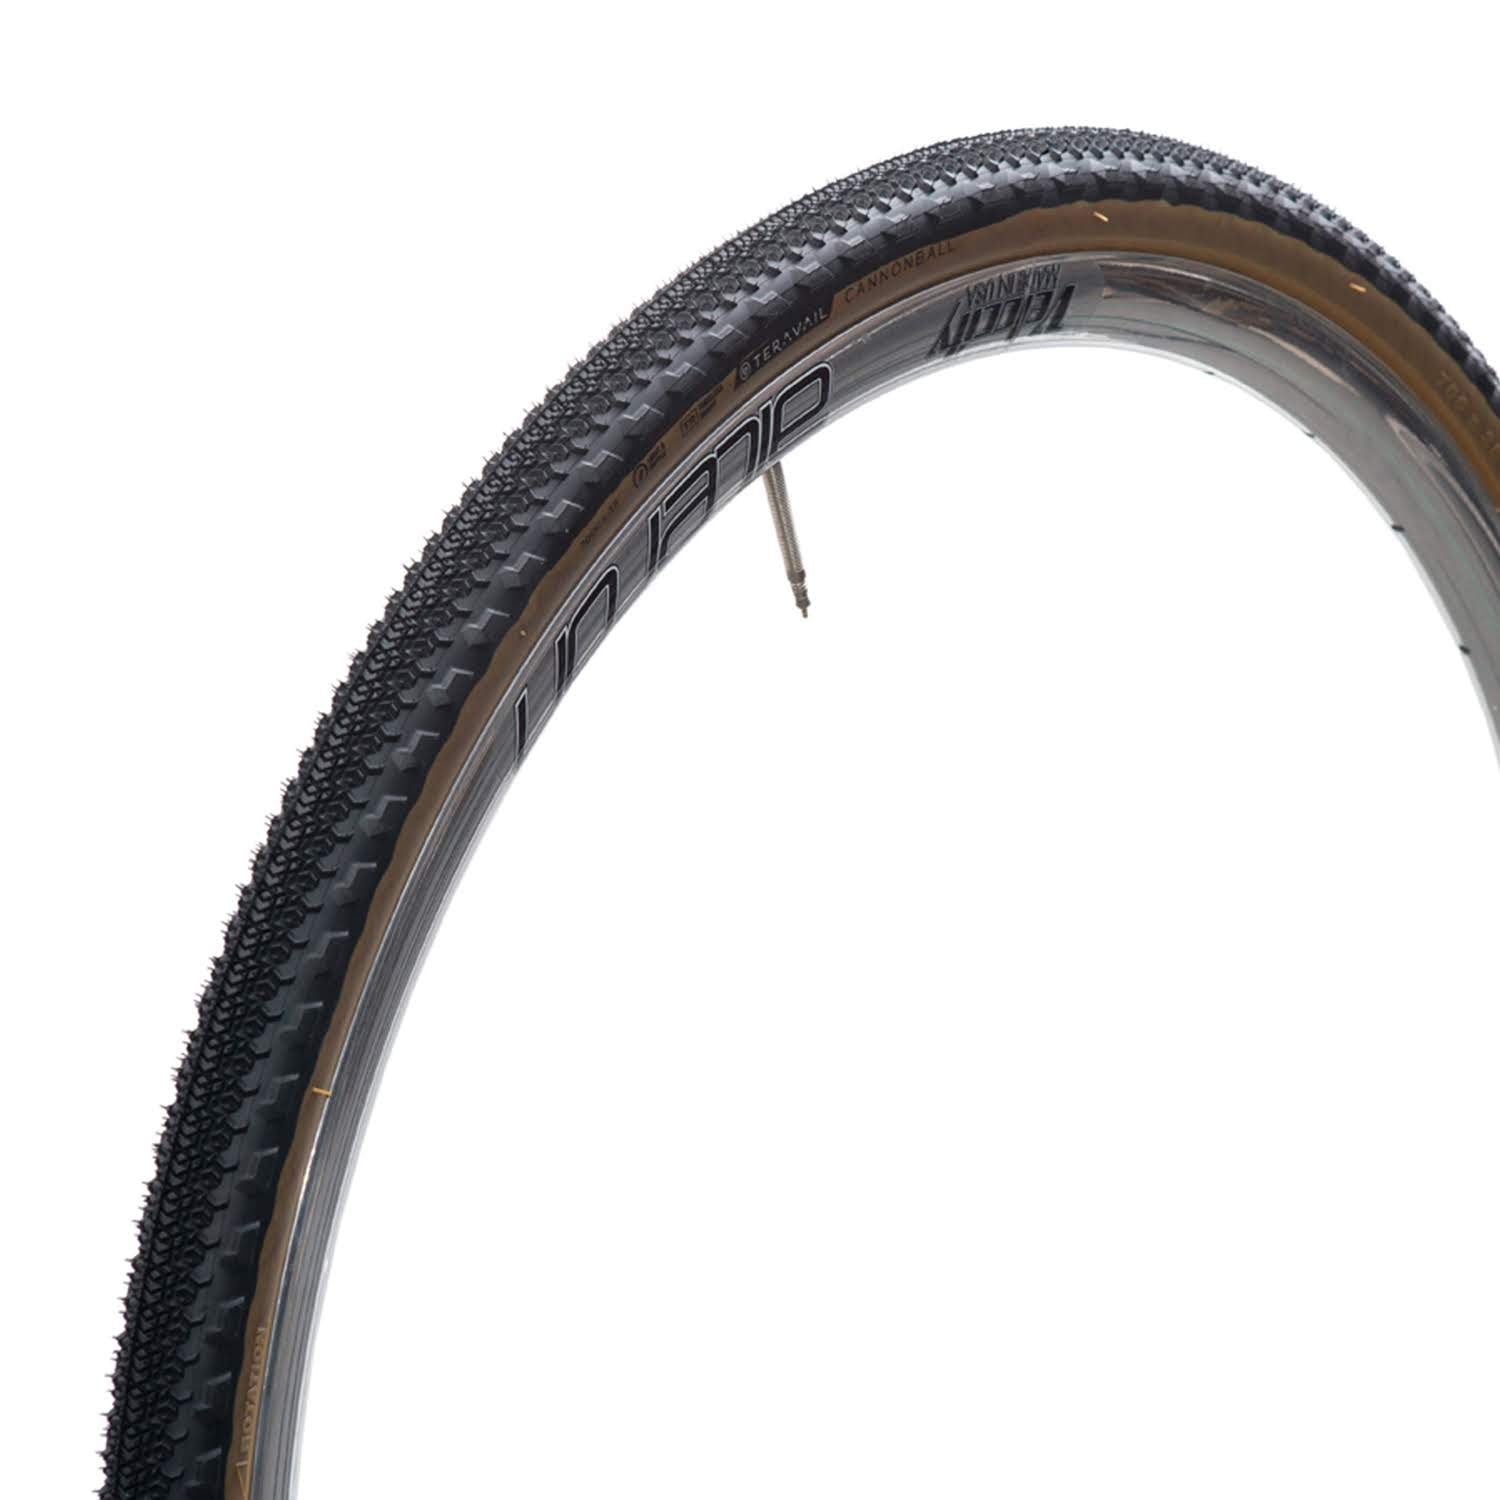 変革のパワーを授ける・願望成就 Teravail Cannonball Bicycle Tire 700 x 47 60tpi  Durable Casing with Bead-to-Bead Puncture Protection Black Sidewall 並行輸入品 